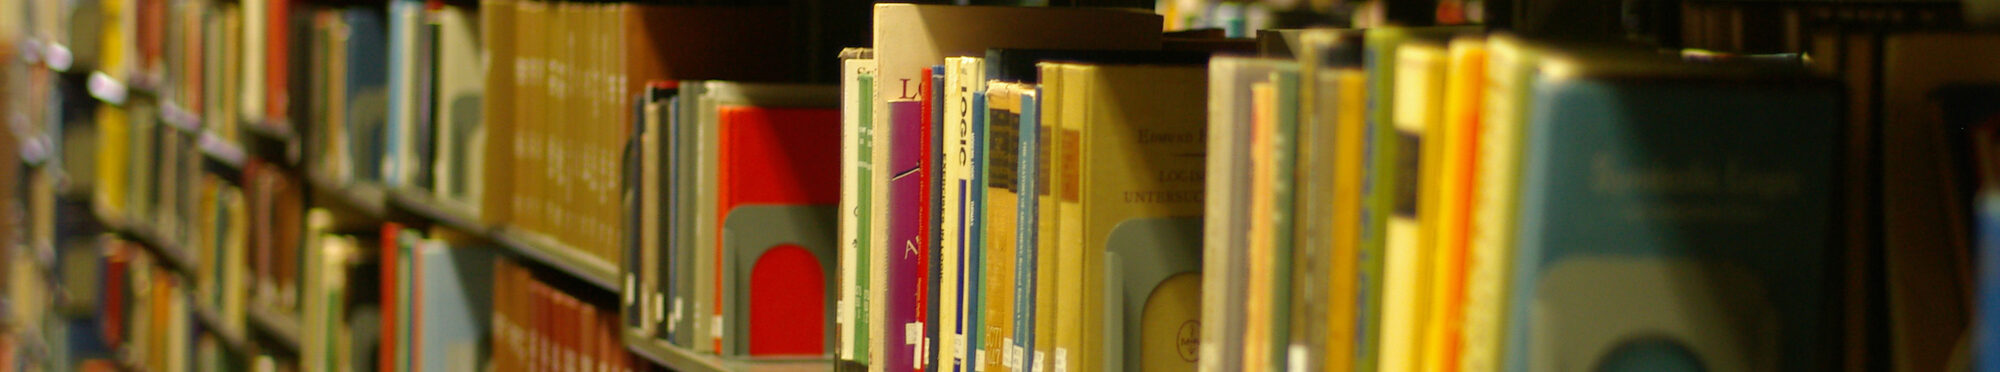 Bücherregal einer Bücherei